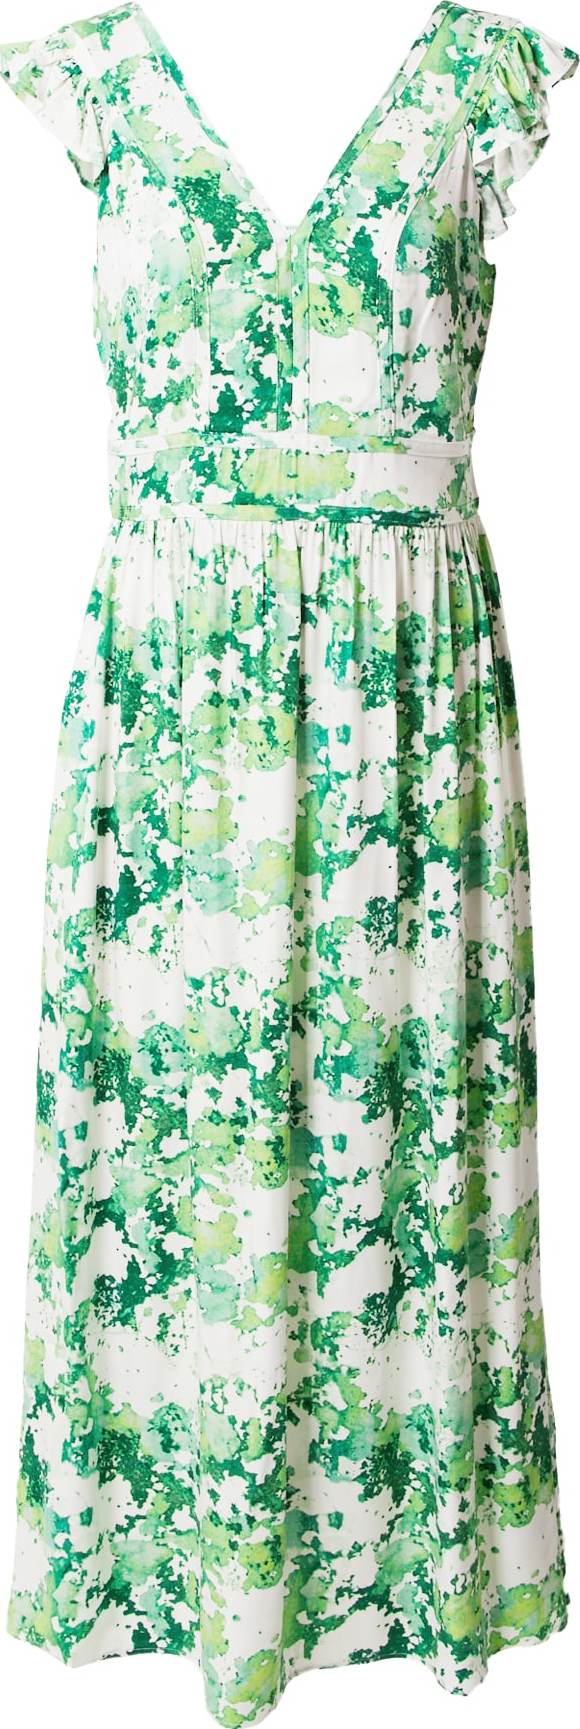 Letní šaty Taifun zelená / jablko / bílá